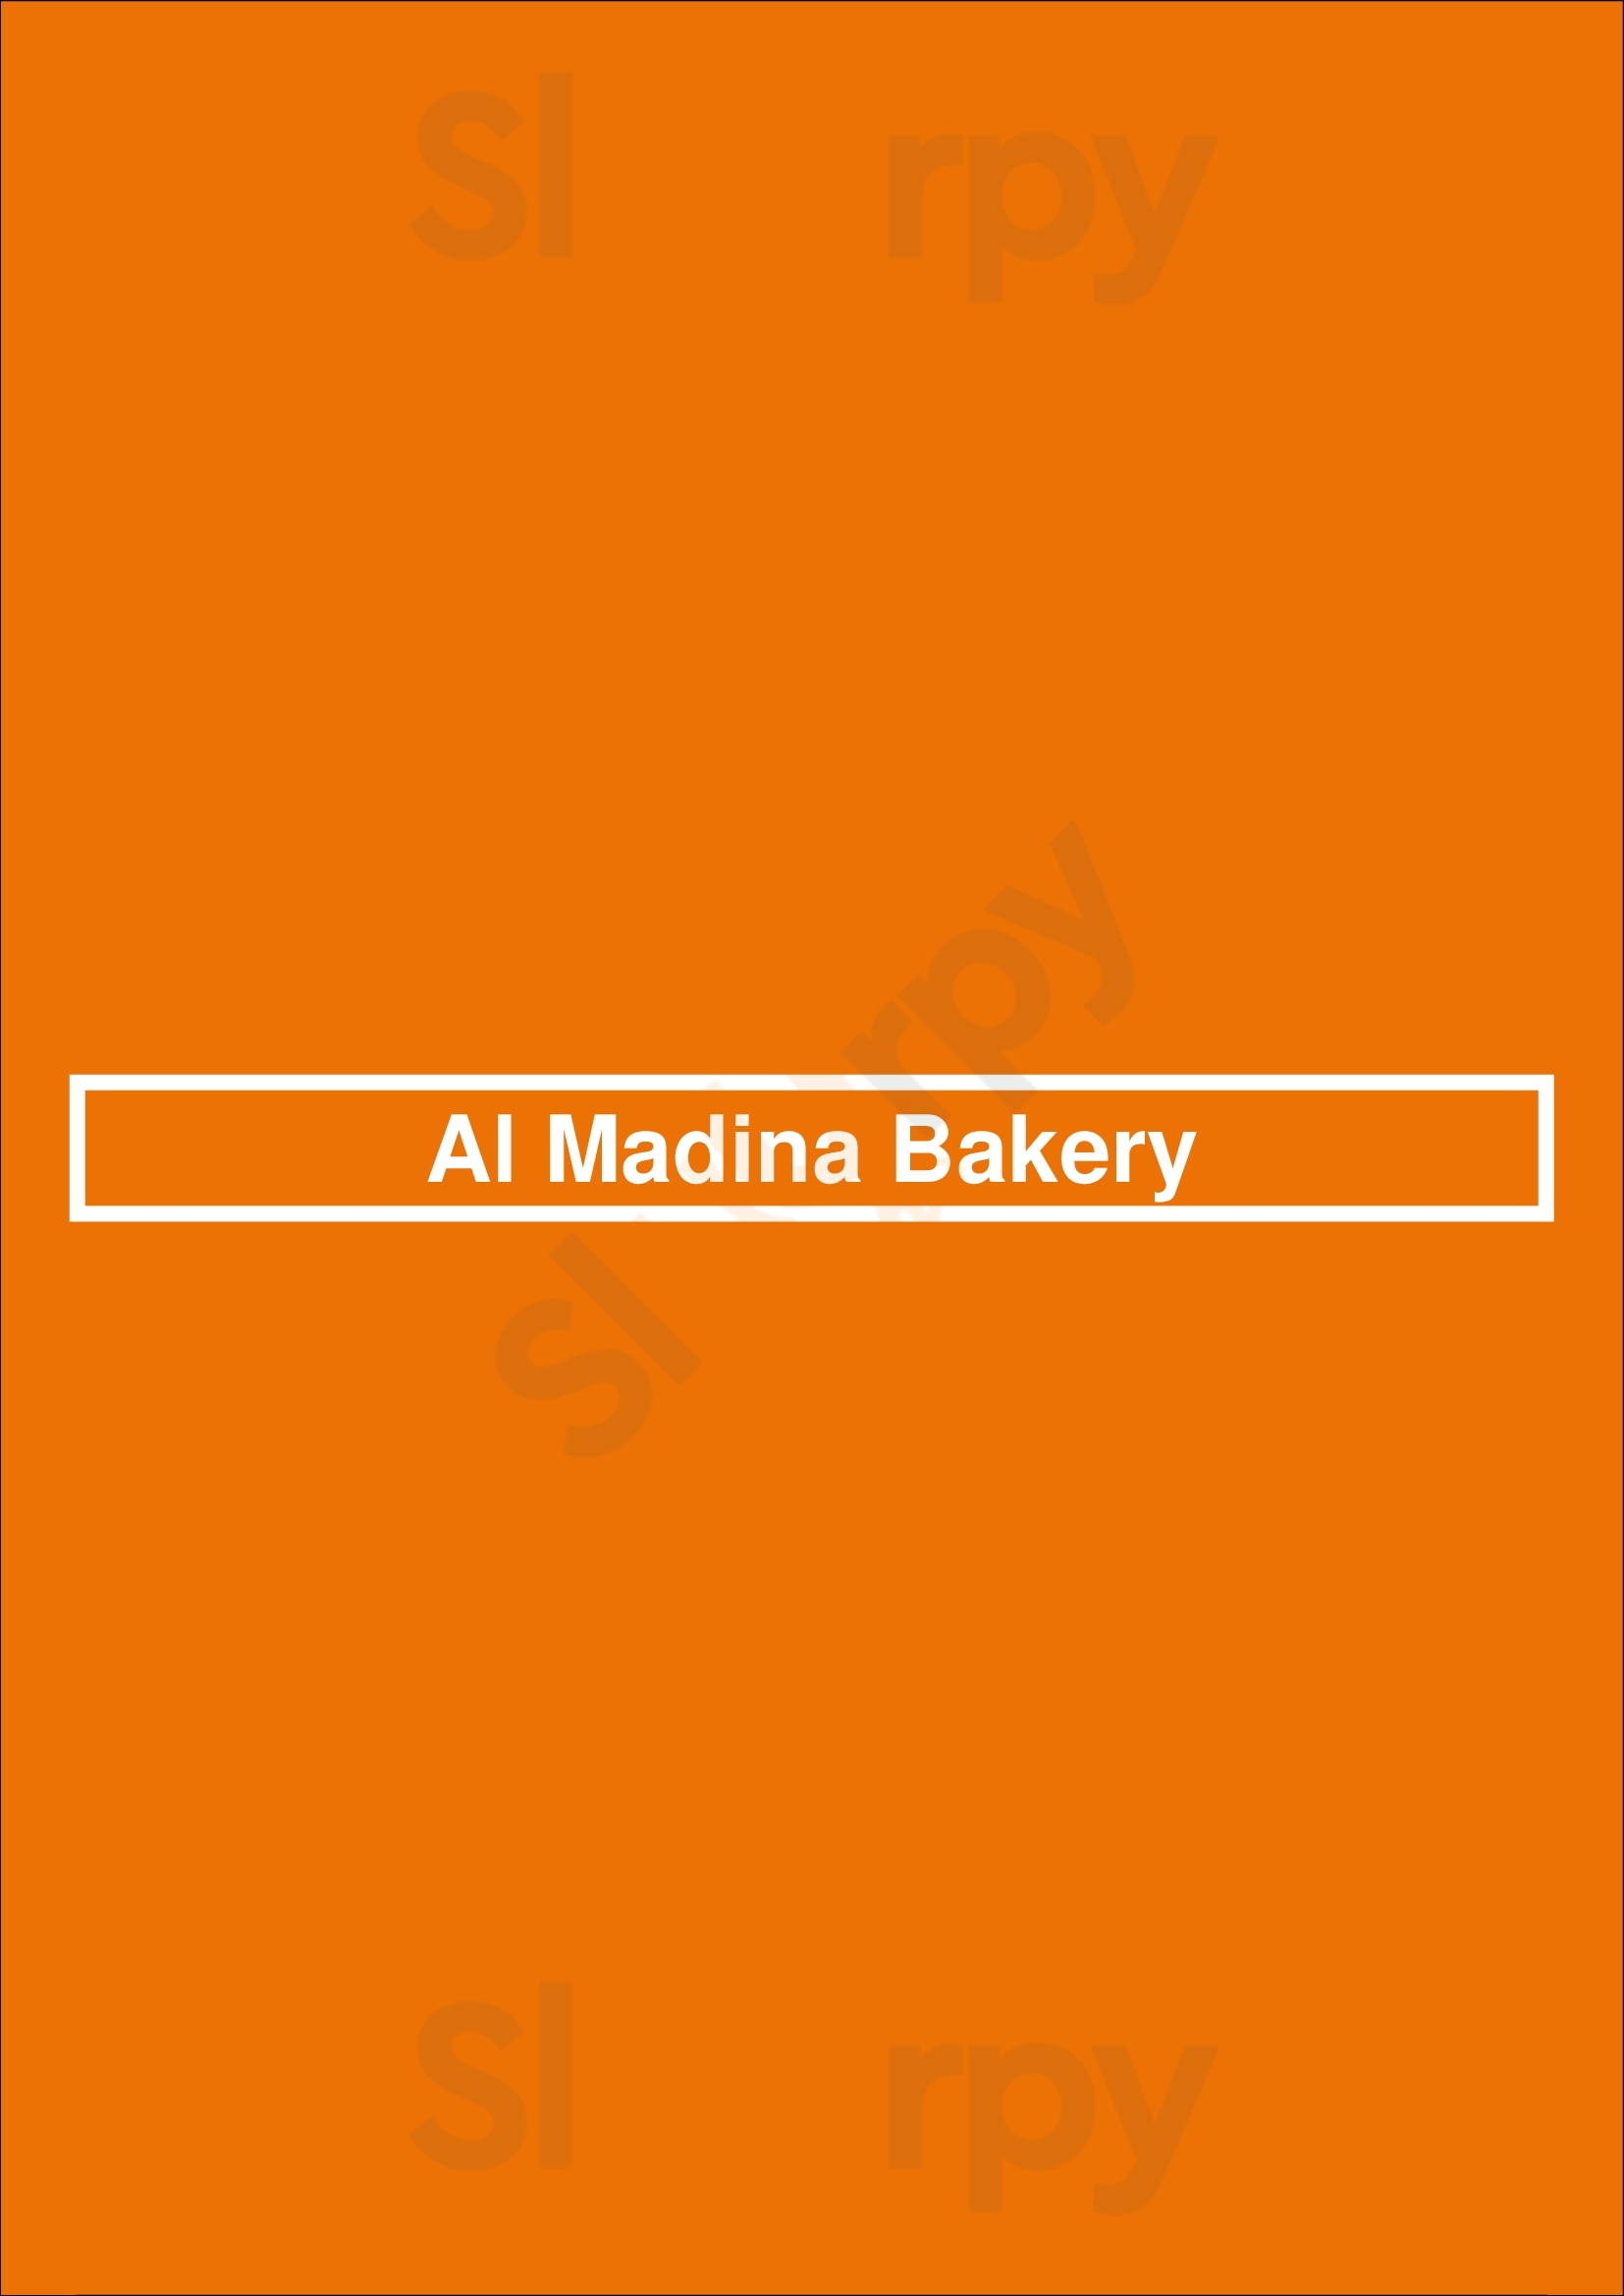 Al Madina Bakery Raleigh Menu - 1